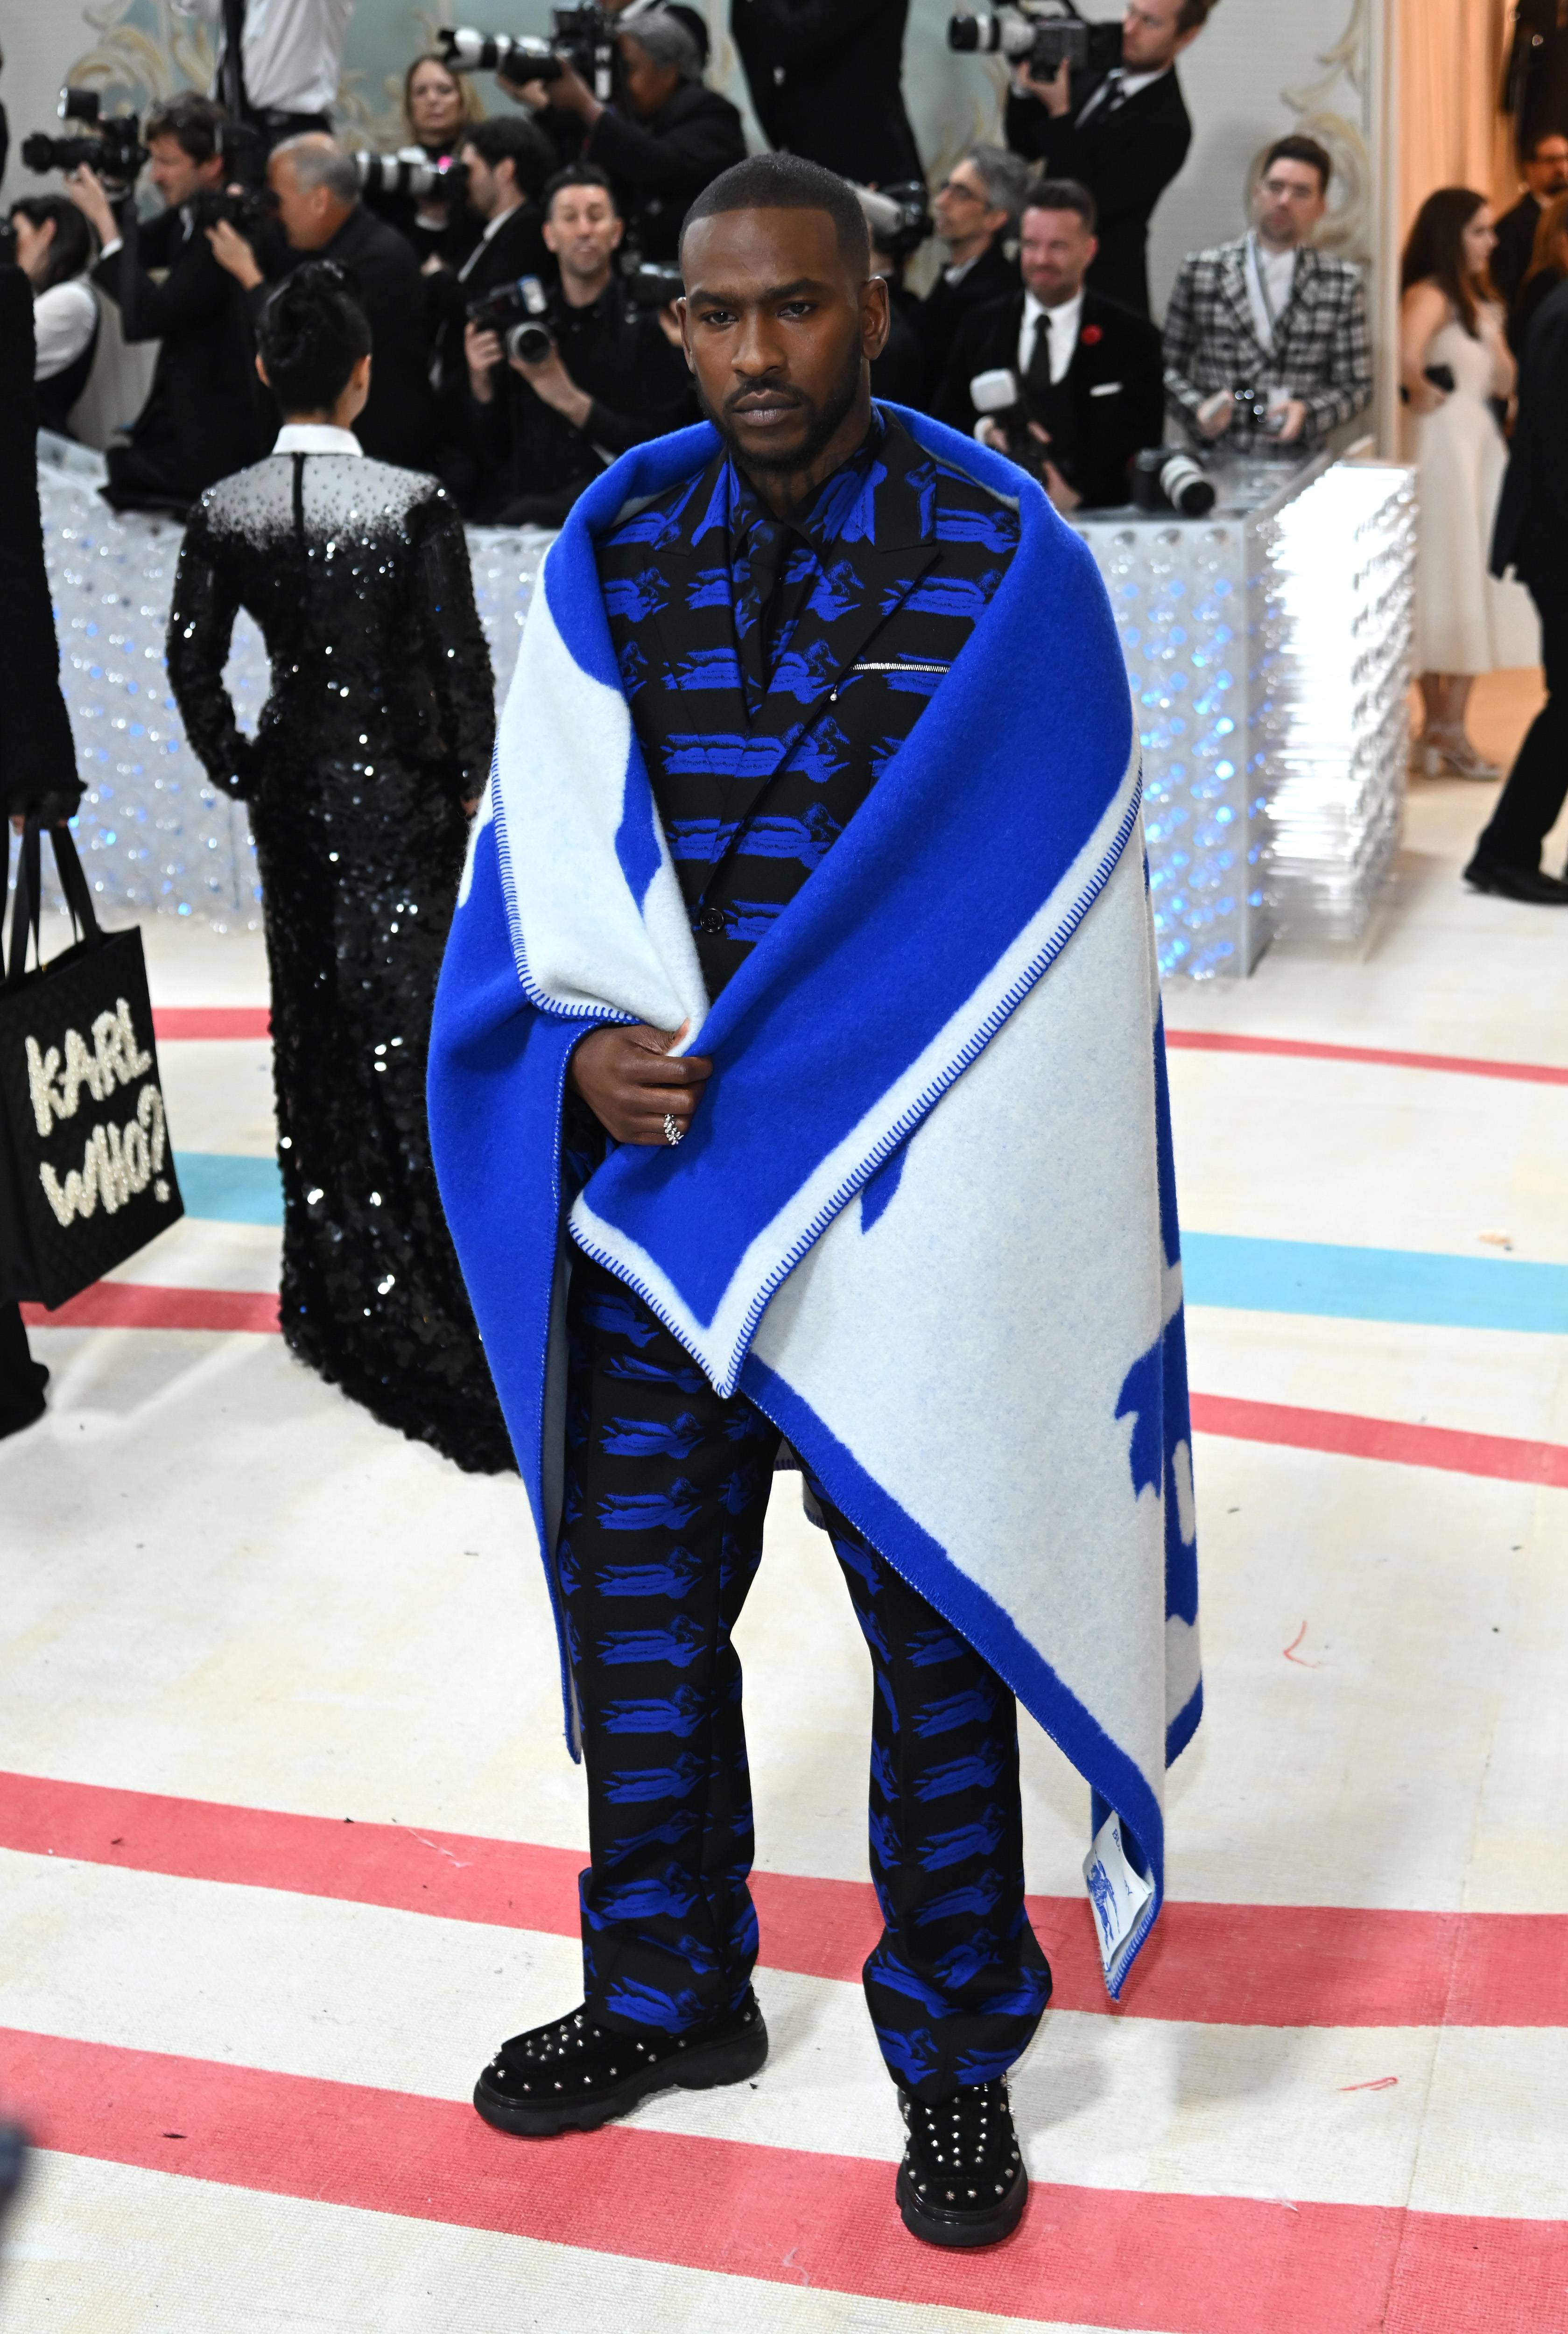 Louis Vuitton's latest Basotho Blanket Inspired Range